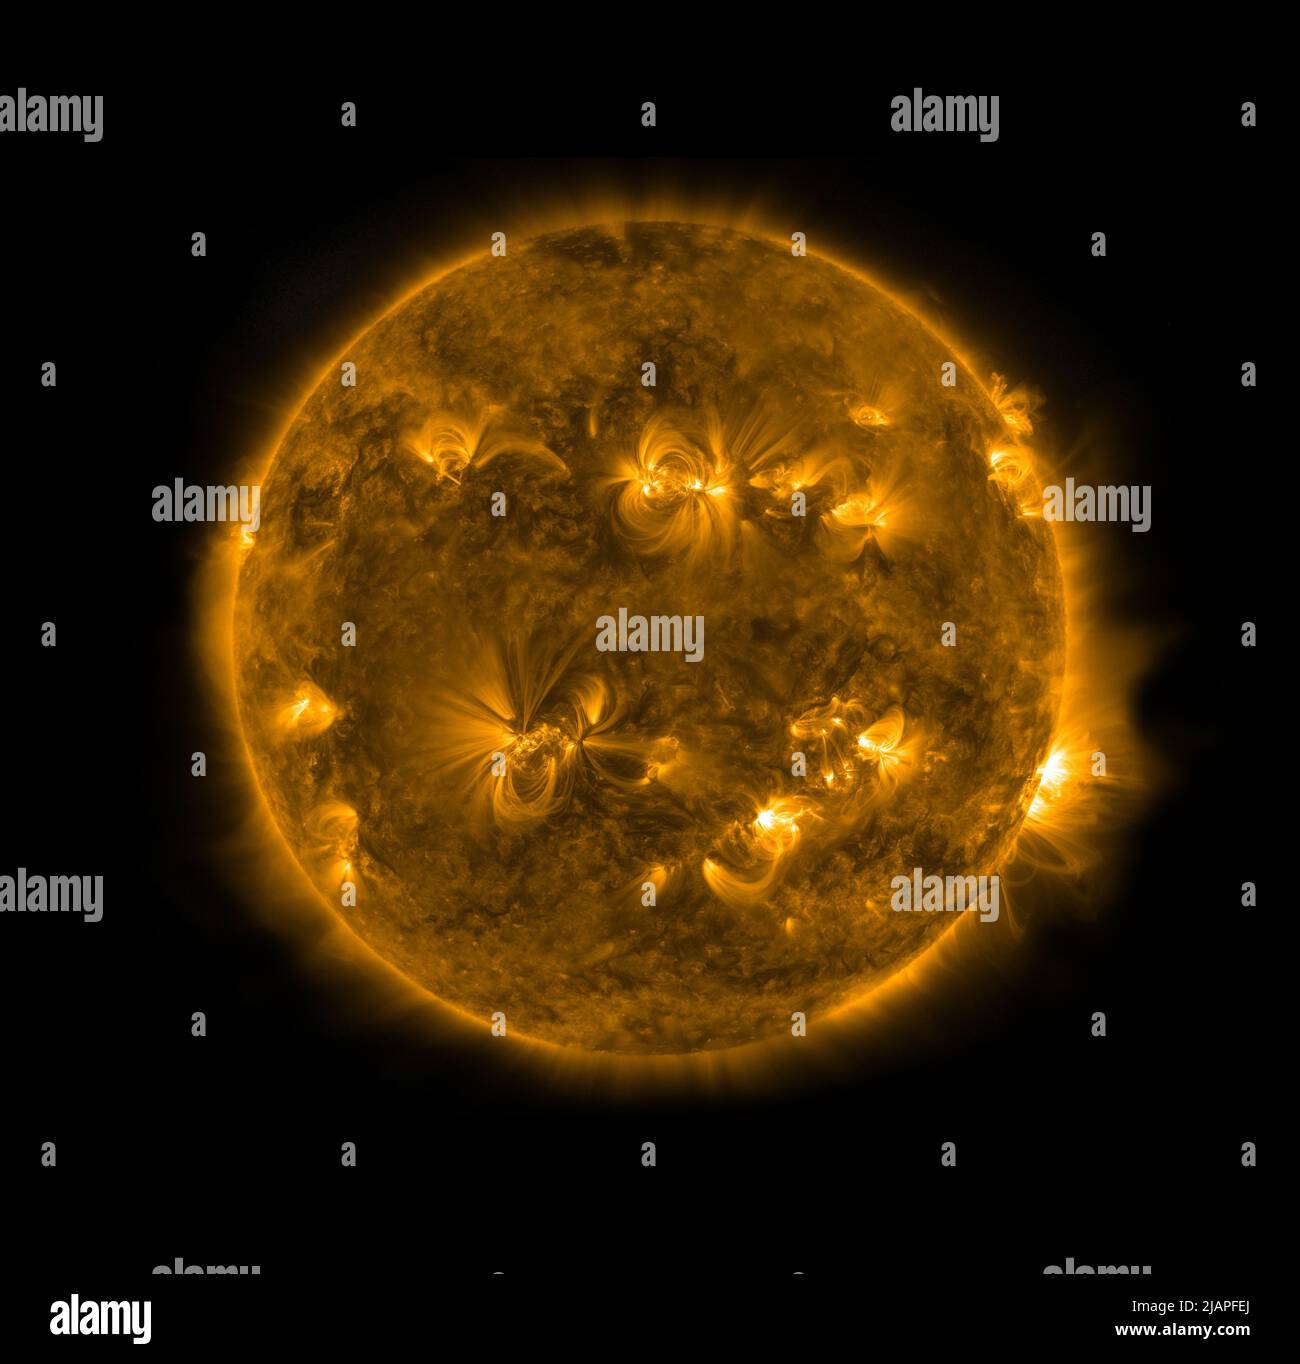 Image haute résolution du Soleil imagée par la NASA et l'Observatoire de dynamique solaire le 27 décembre 2021. Les lignes minces et murmures sont appelées boucles coronales et elles sont faites de matière solaire chaude Ð particules chargées appelé plasma Ð qui s'accumulent autour des champs magnétiques invisibles qui se bouclent du soleil. Une version optimisée et améliorée d'une image d'origine de la NASA. Credit: 'Gracieuseté de la NASA/SDO et des équipes scientifiques AIA, EVE et HMI' une version optimisée et améliorée d'une image originale de la NASA. Crédit NASA Banque D'Images